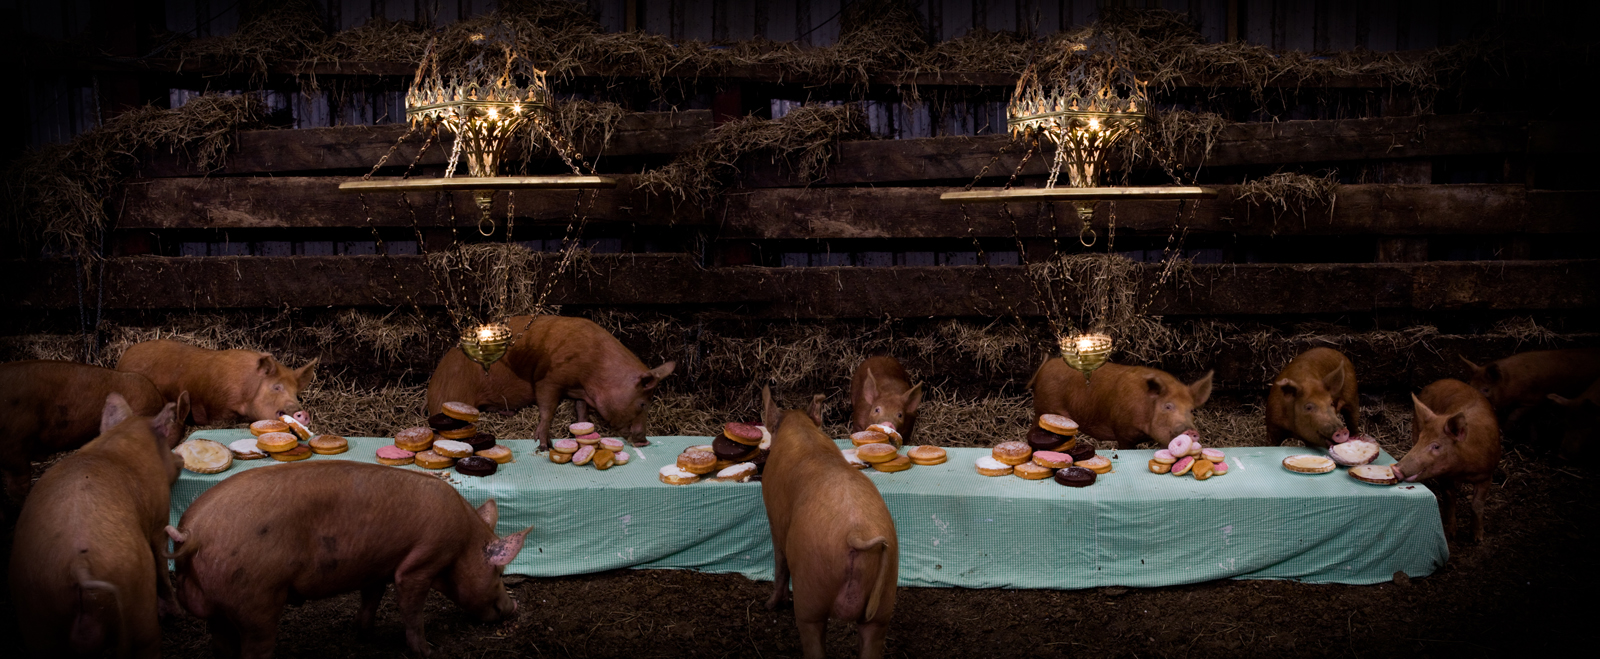  The Pig Feast  United Kingdom, 2010  10”x24” | 20”x48.5” | 40”x97” 